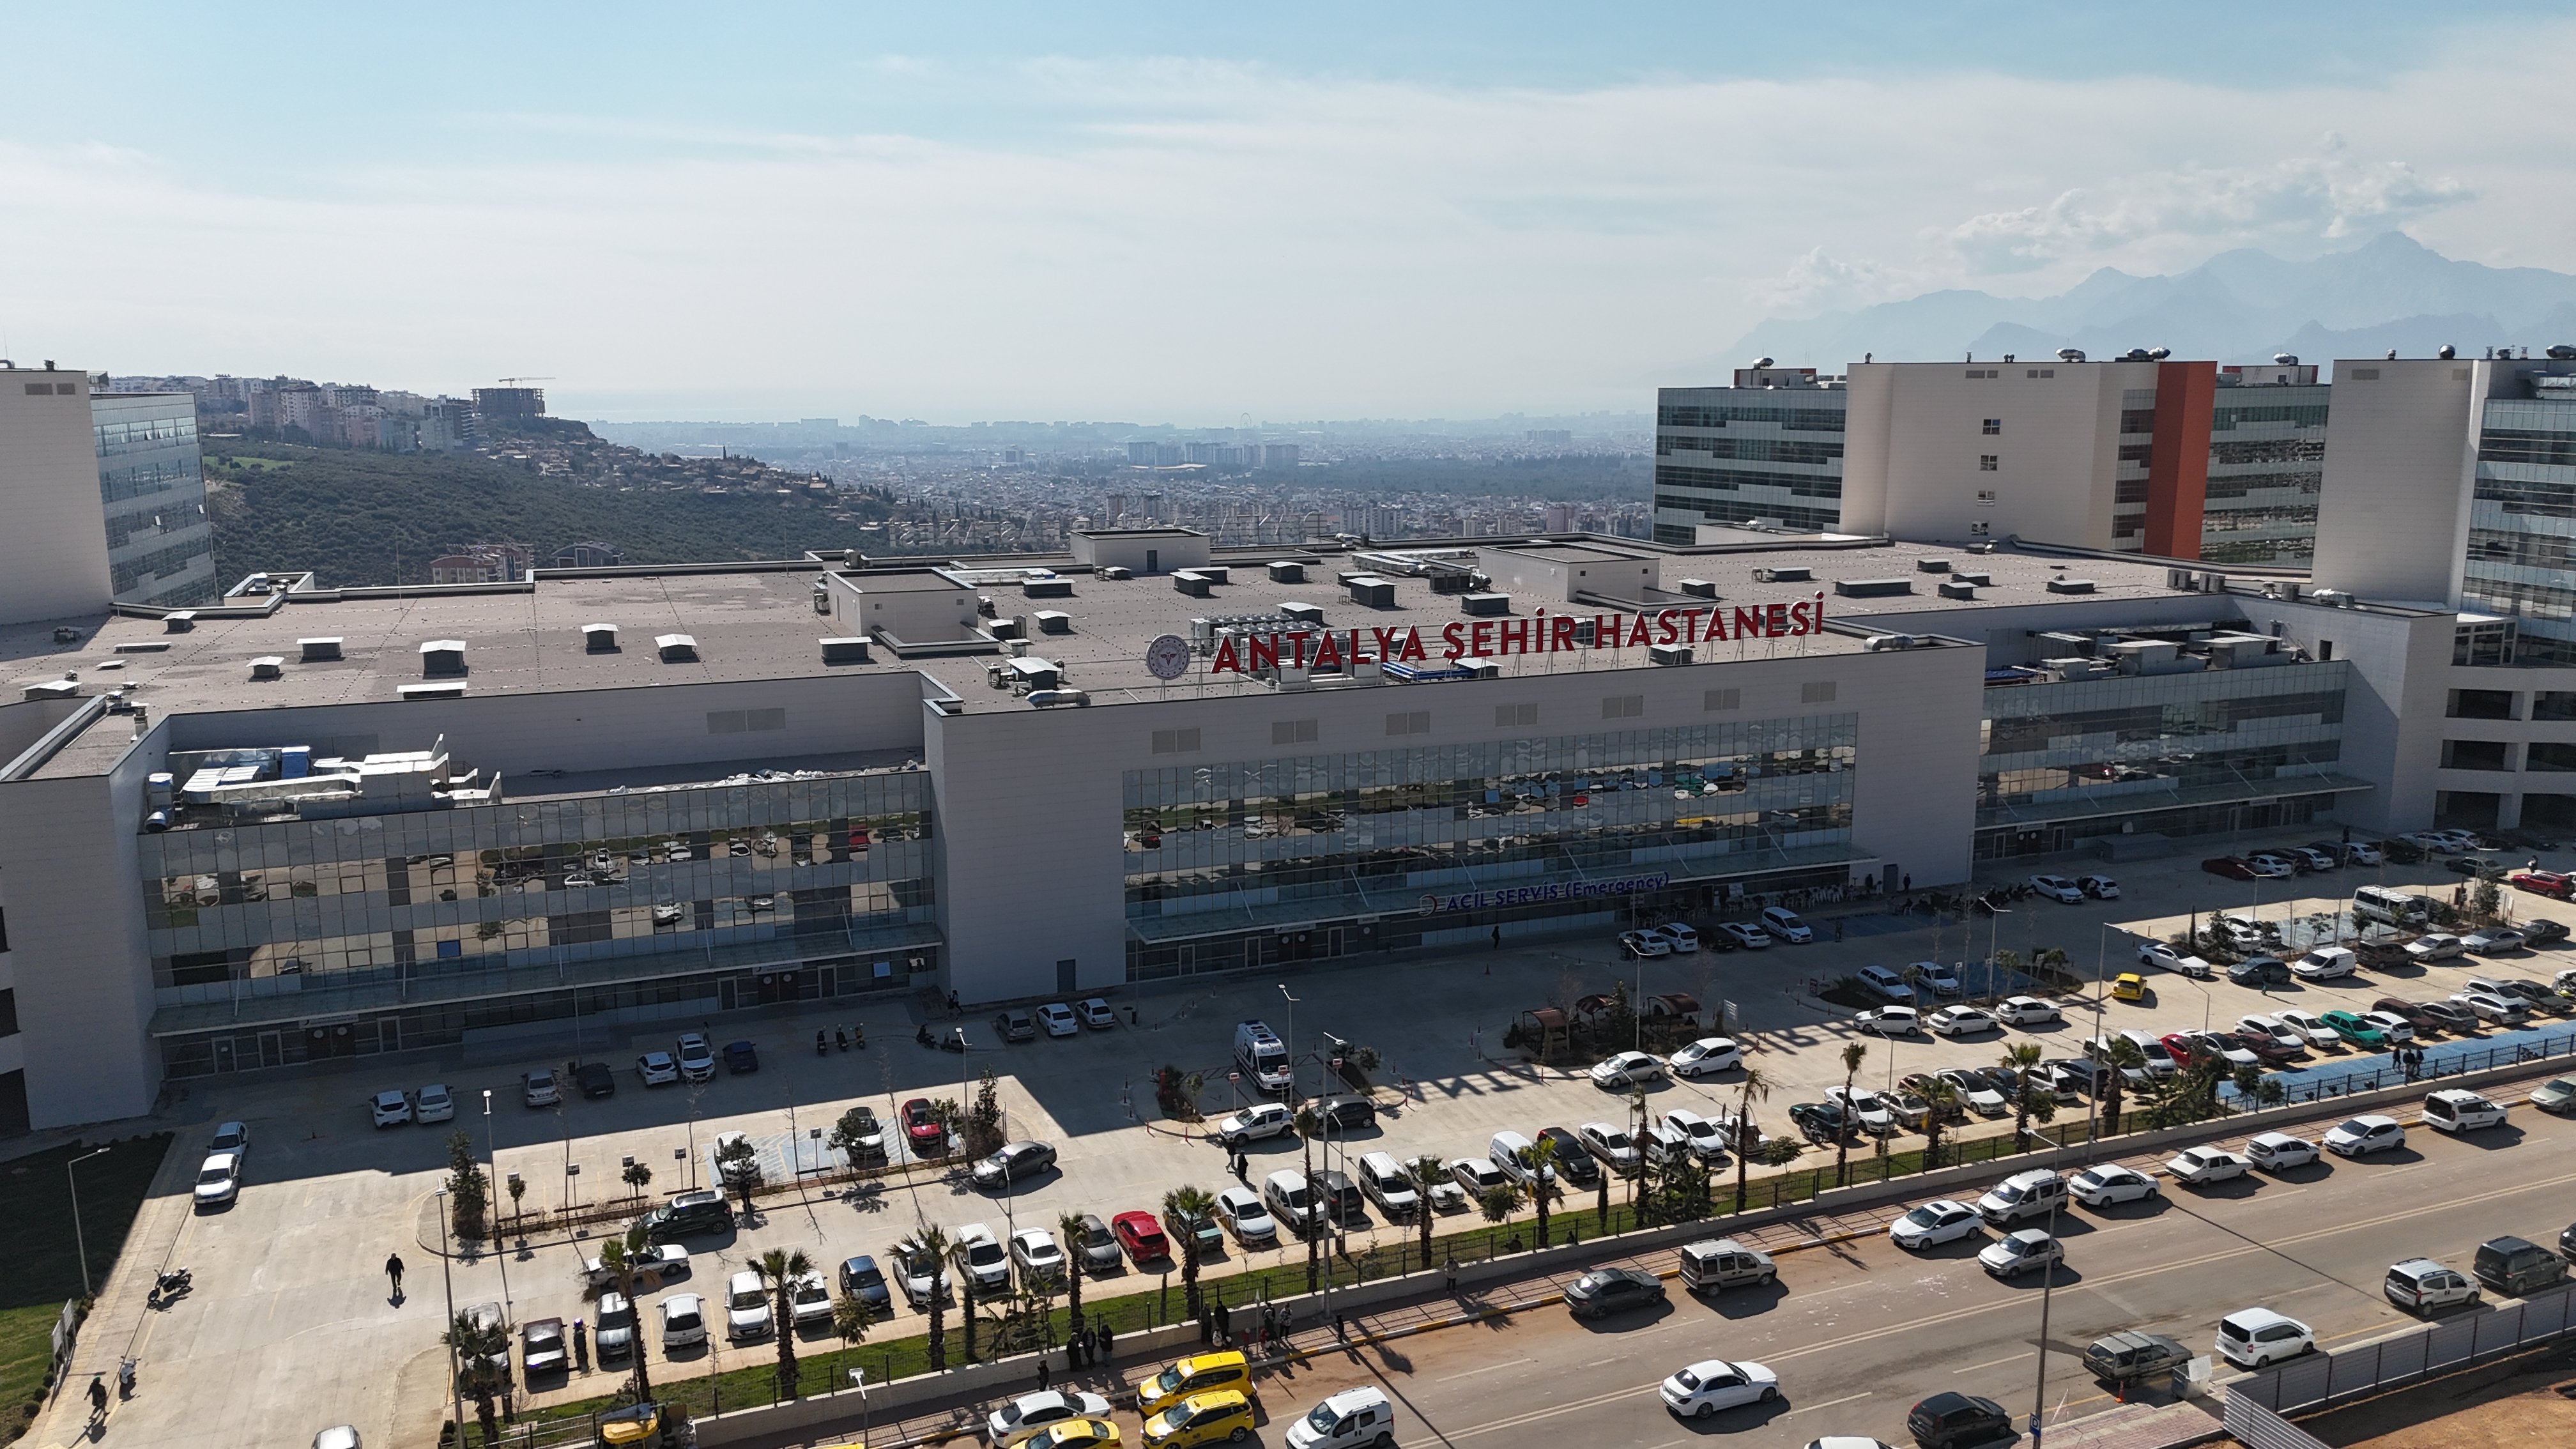 Cumhurbaşkanı Recep Tayyip Erdoğan Antalya Şehir Hastanesi açılışını gerçekleştirdi